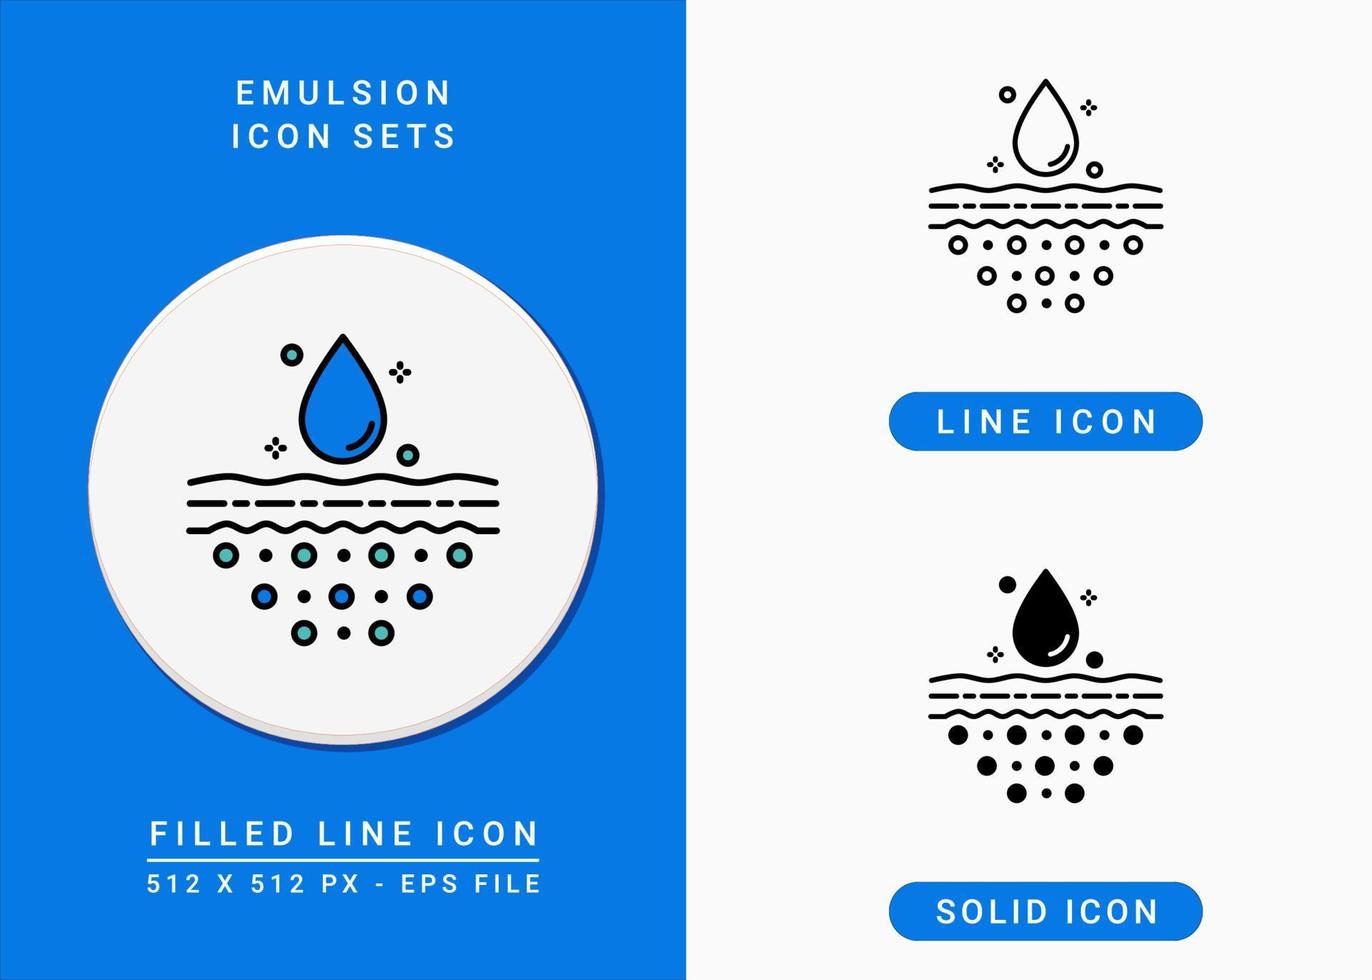 iconos de emulsión establecer ilustración vectorial con estilo de línea de icono sólido. concepto de absorción de agua de gota. icono de trazo editable en un fondo aislado para diseño web, infografía y aplicación móvil ui. vector